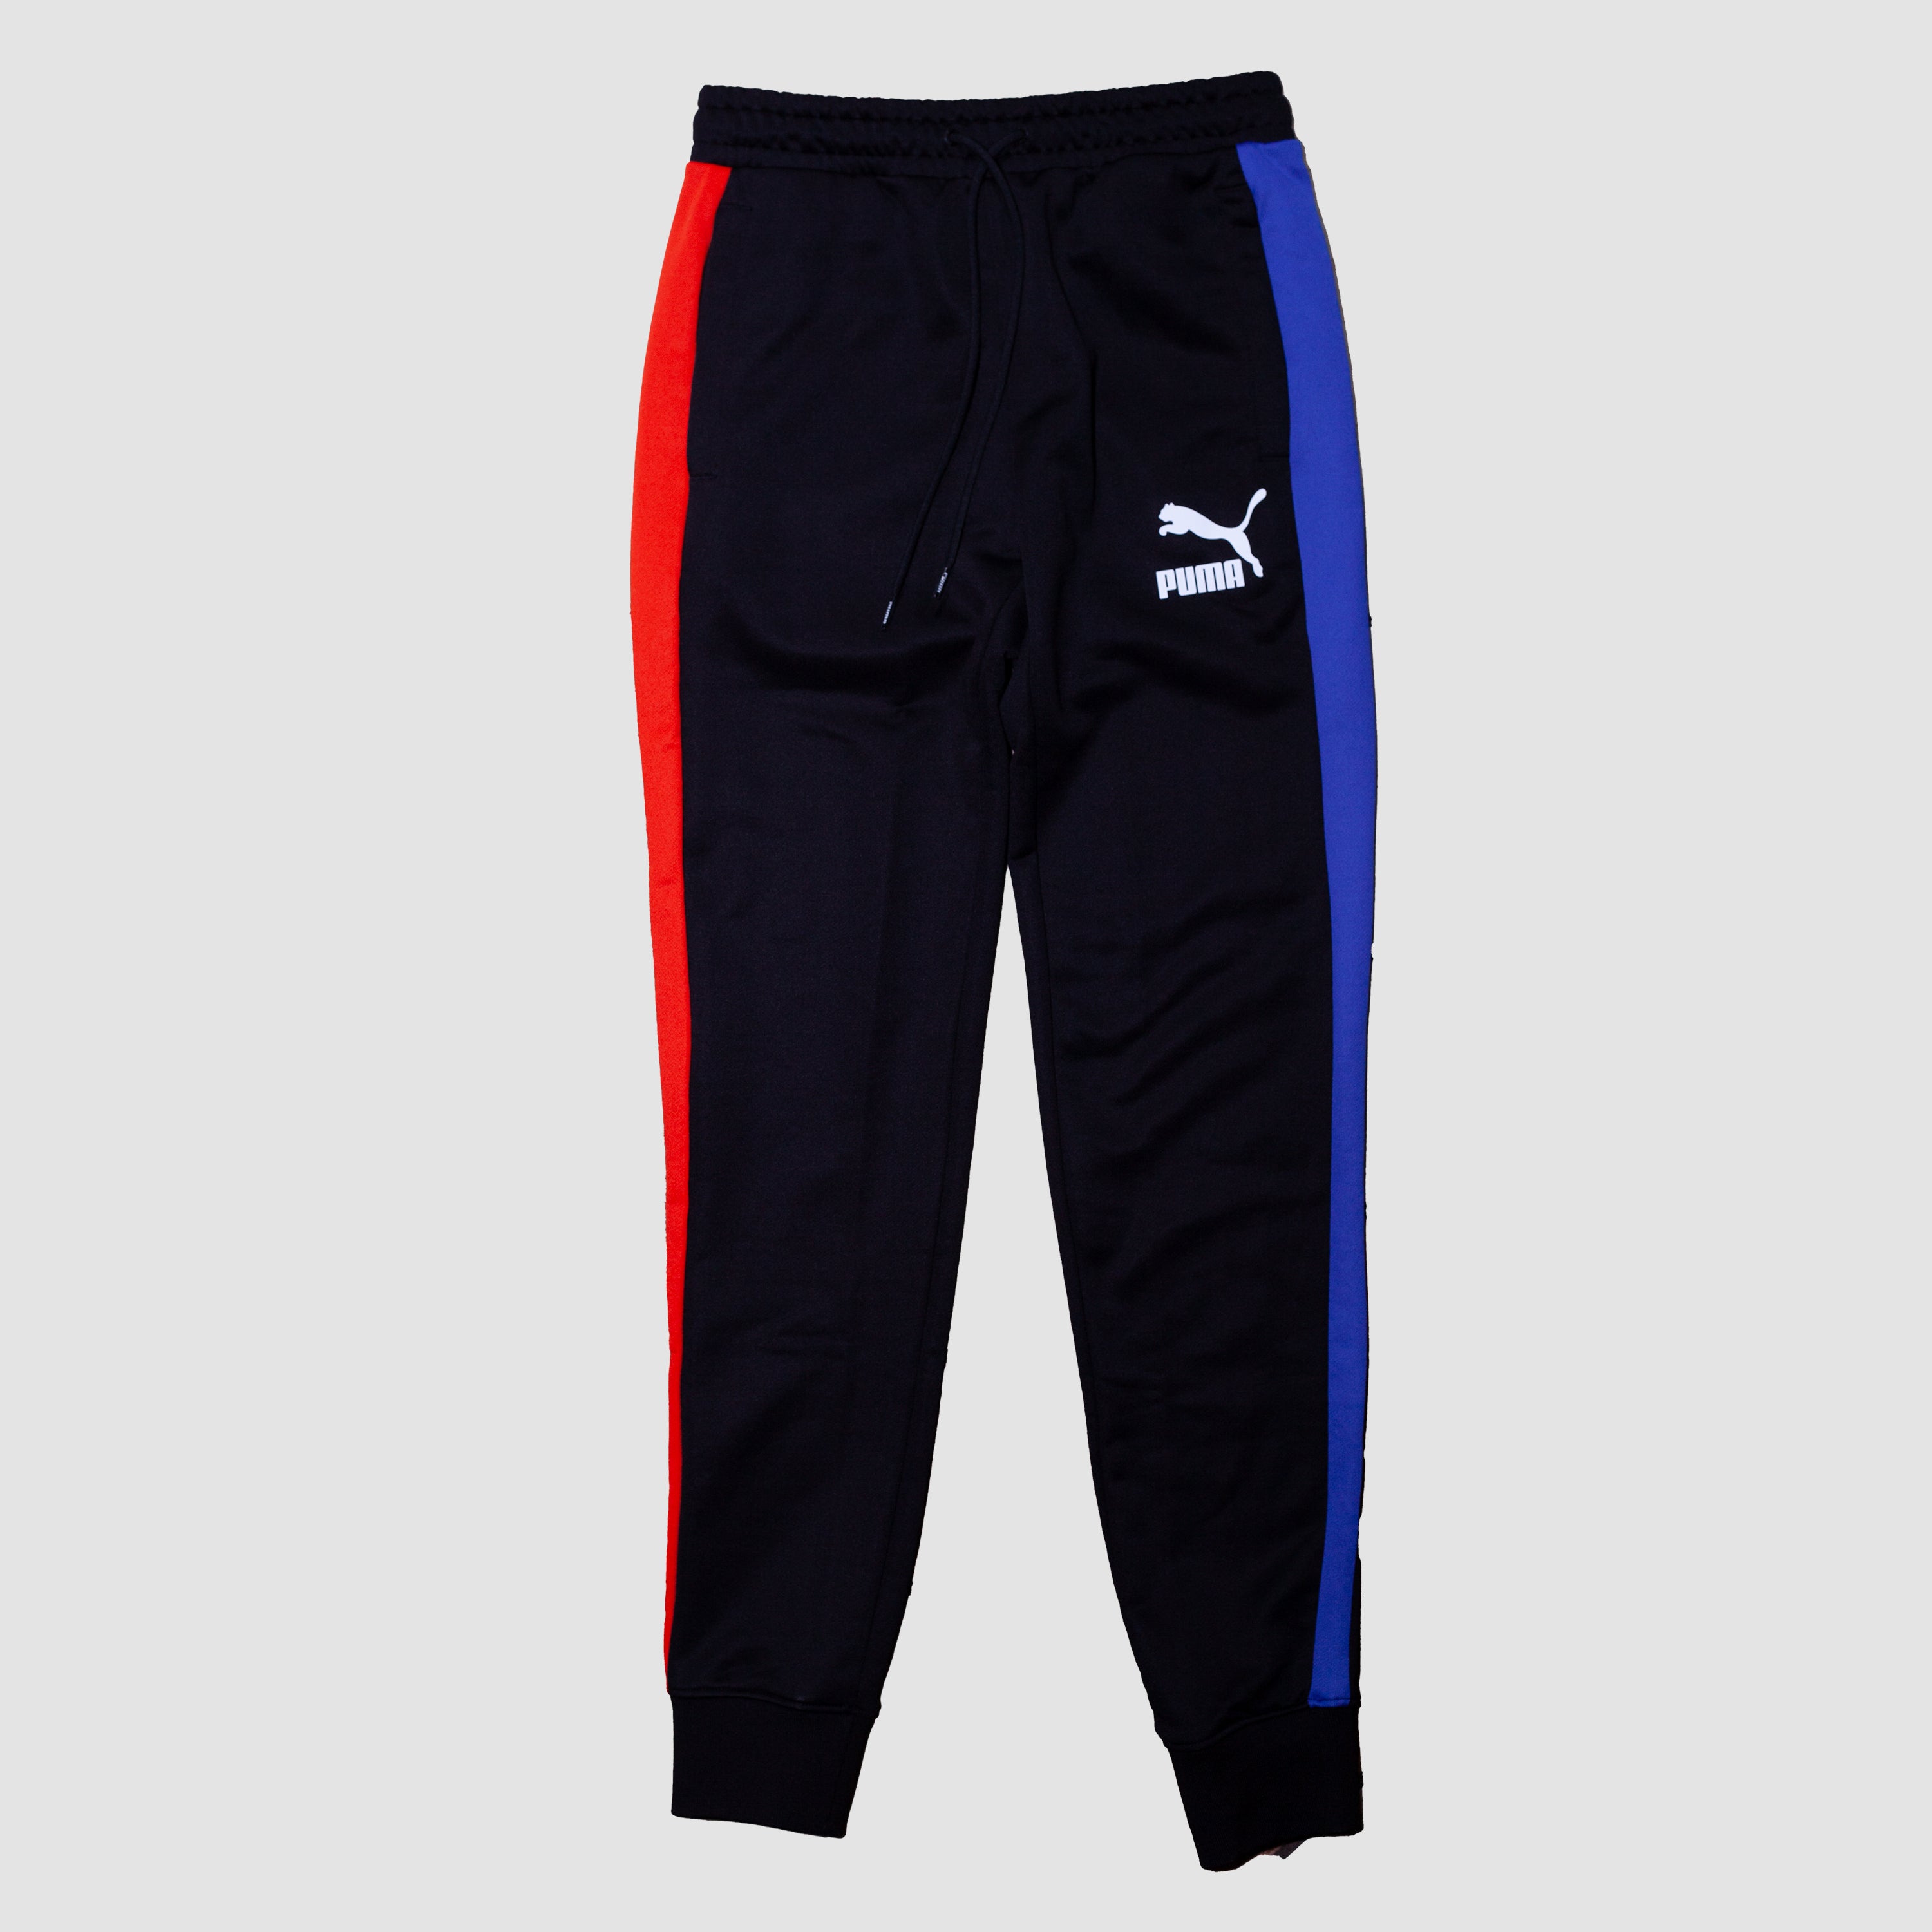 Puma Men Track Pants - Black, XXL | Total Sporting & Fitness Solutions Pvt  Ltd